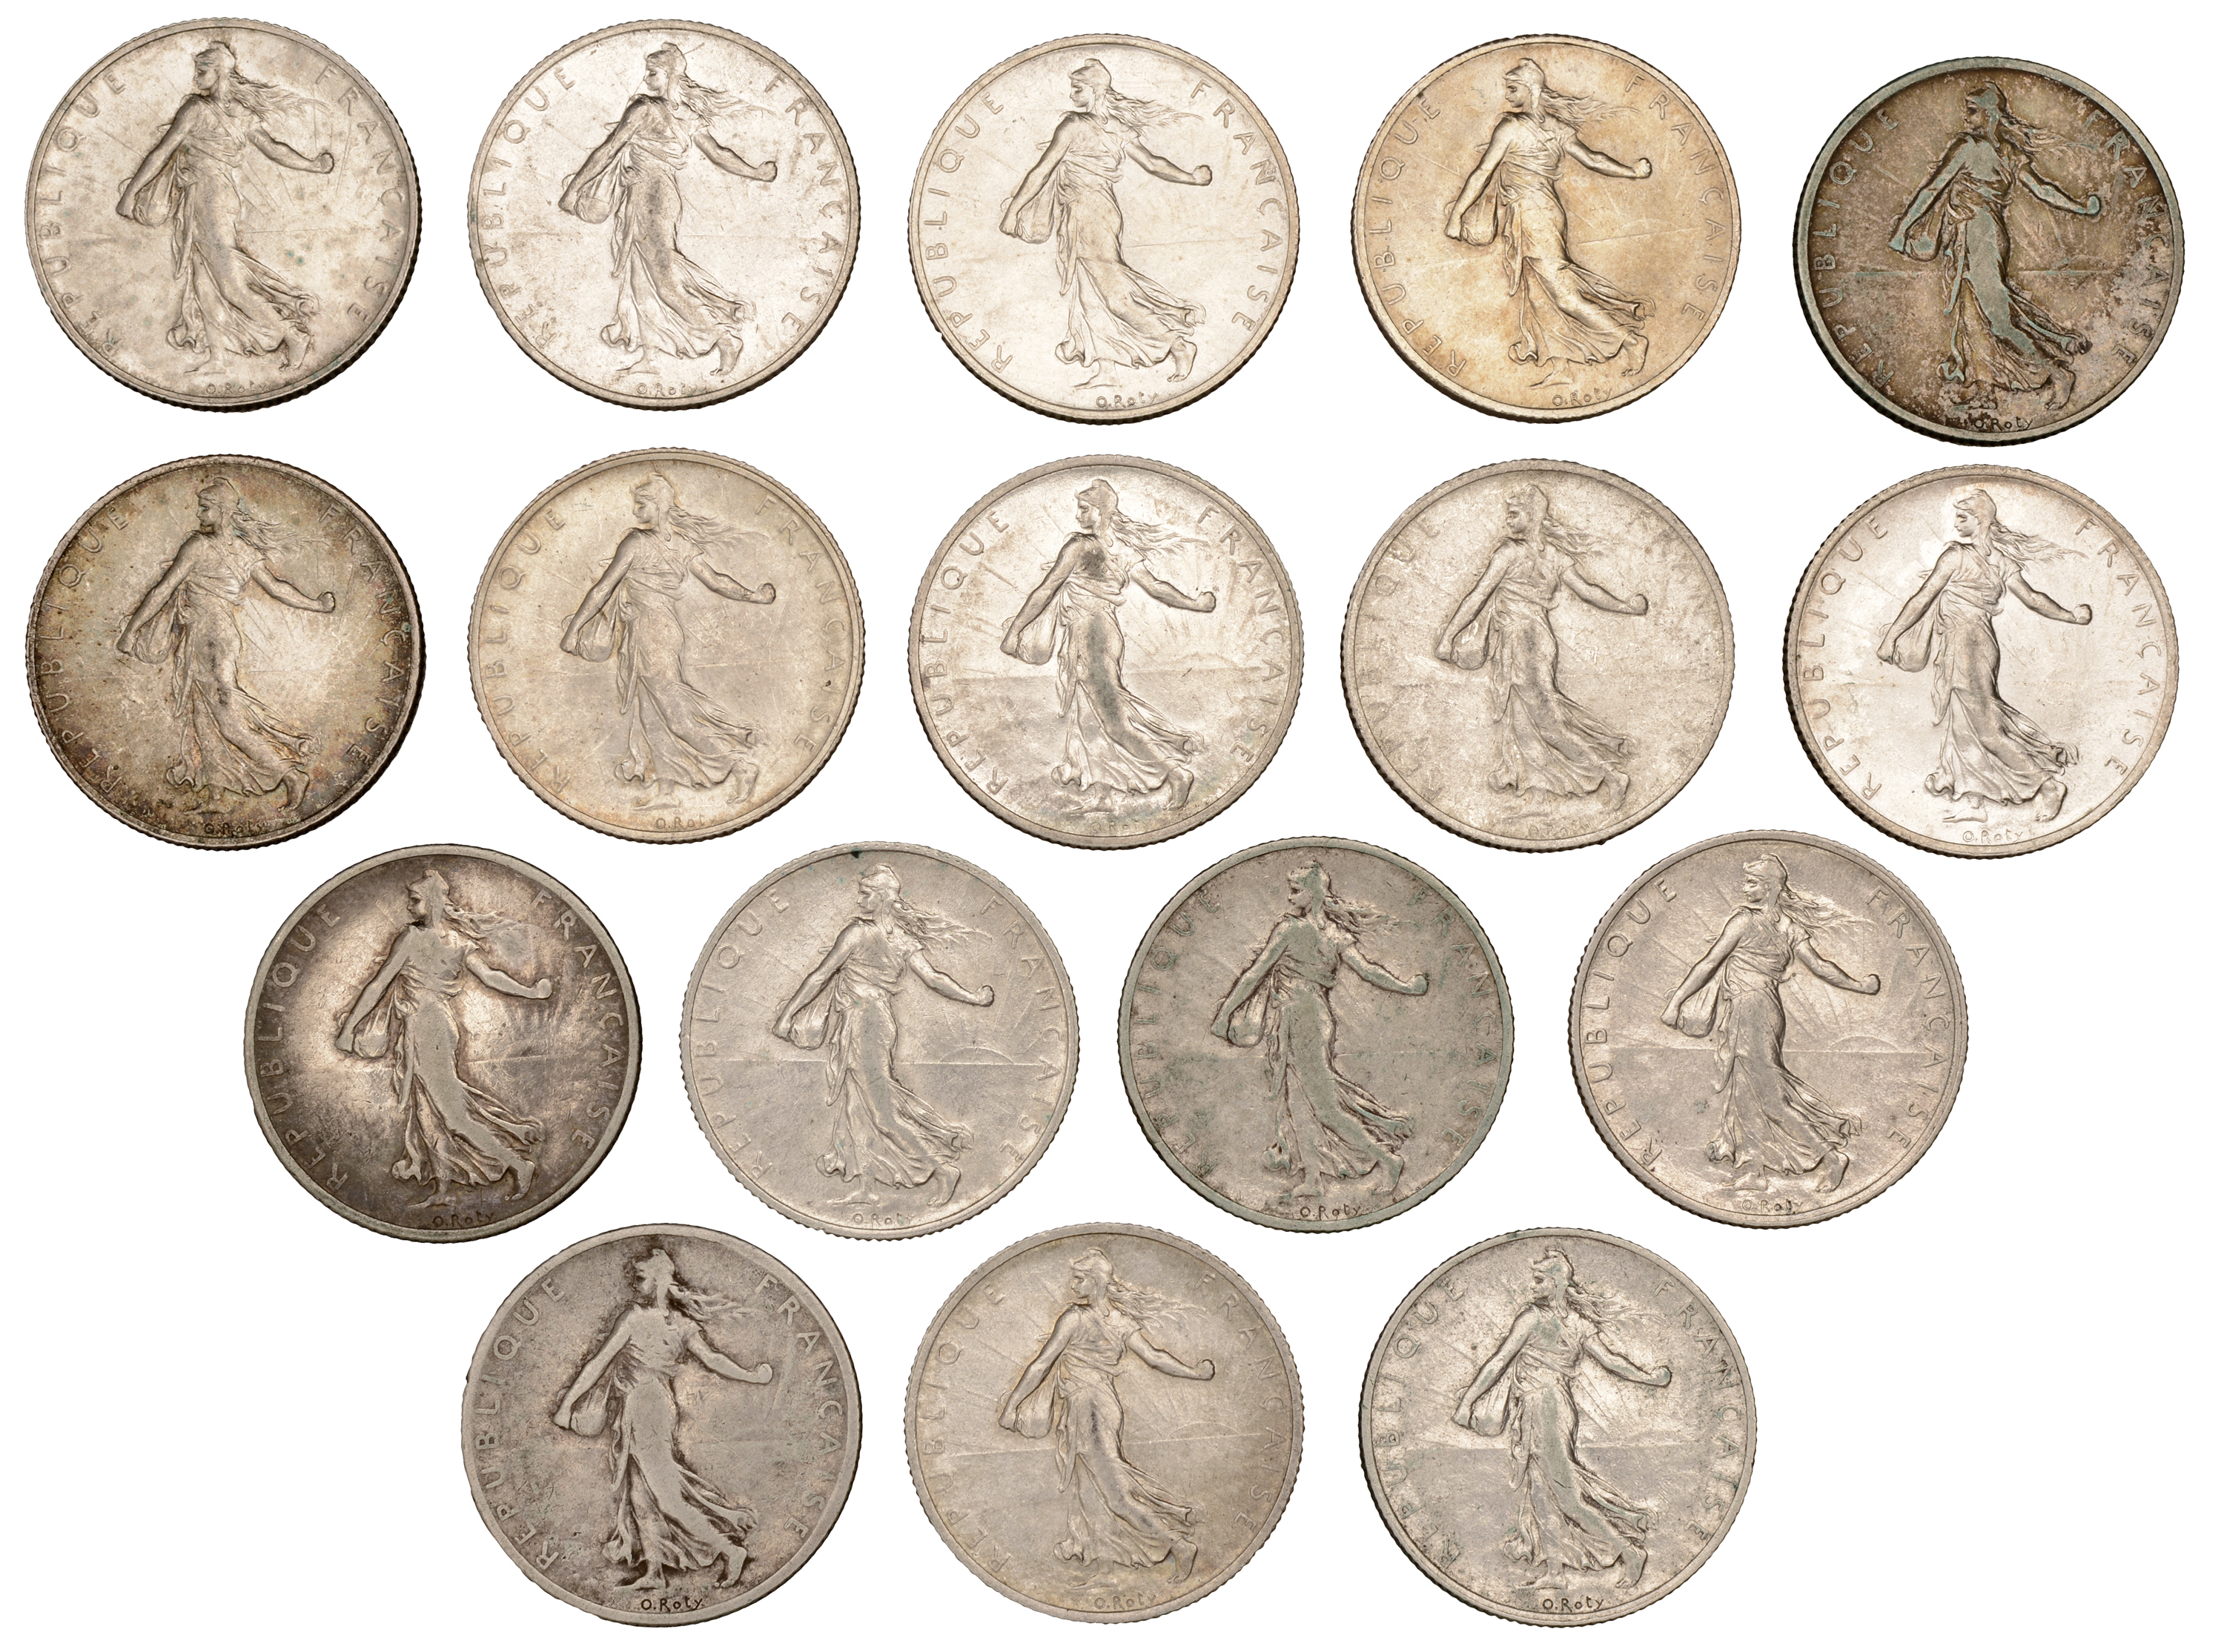 France, Third Republic (1871-1940), 2 Francs (17), 1898-1902, 1904, 1905, 1908, 1912, 1914,...